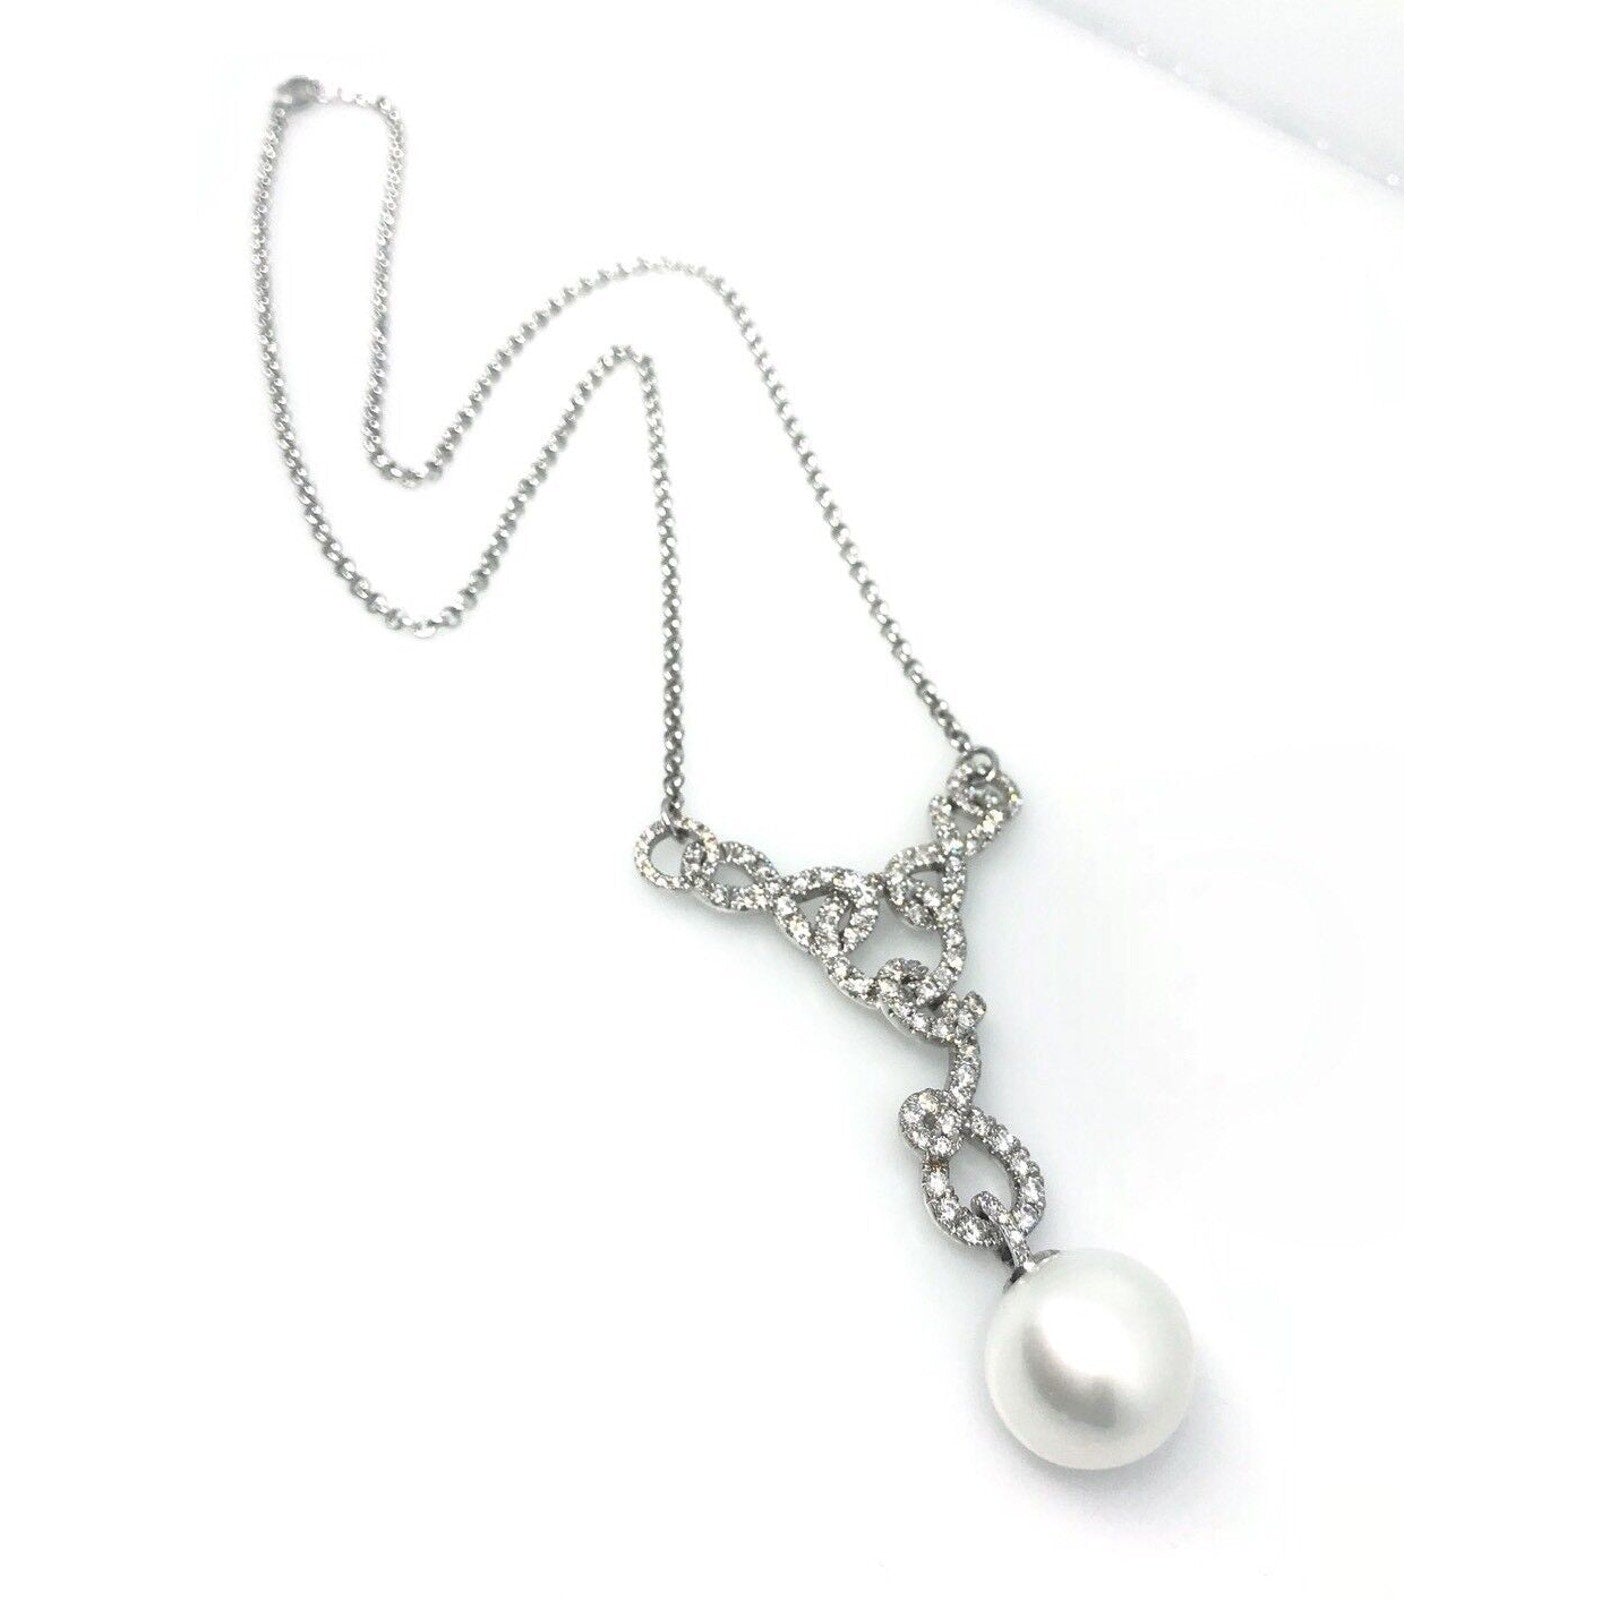 South Sea Pearl and Diamond Necklace Pendant in 18k White Gold - HM973E